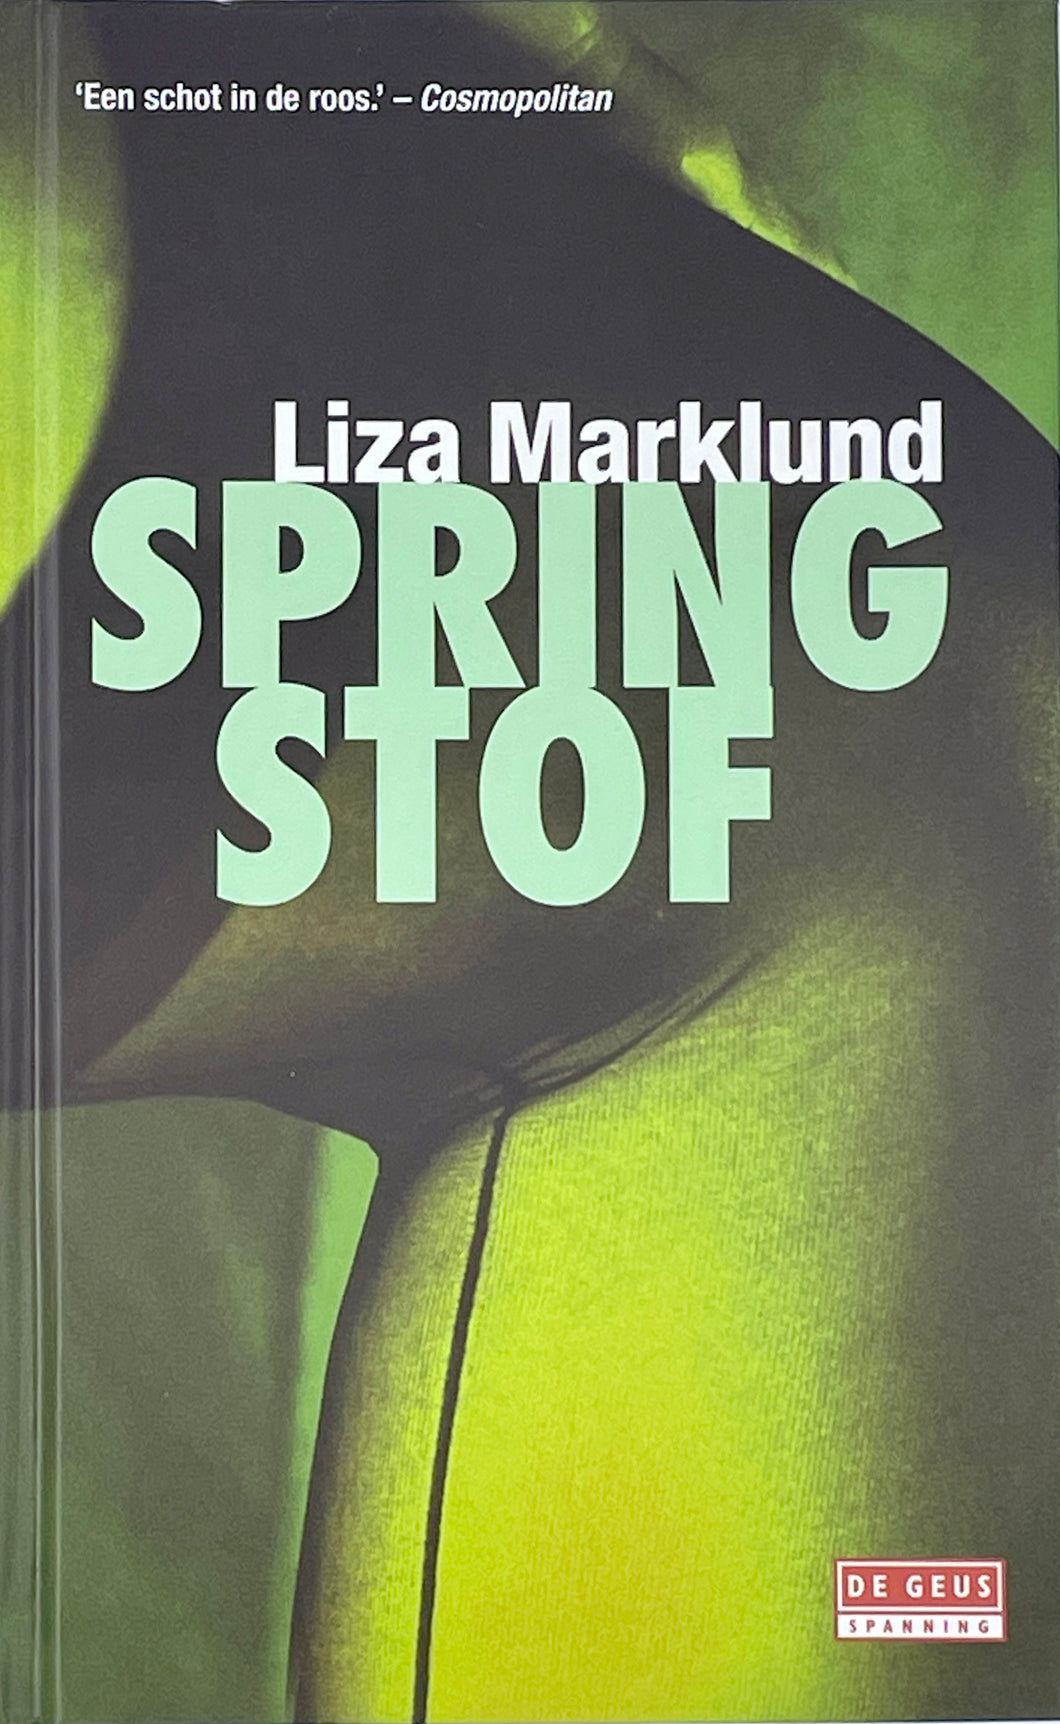 Marklund Liza - Annika Bengtzon 01/Springstof